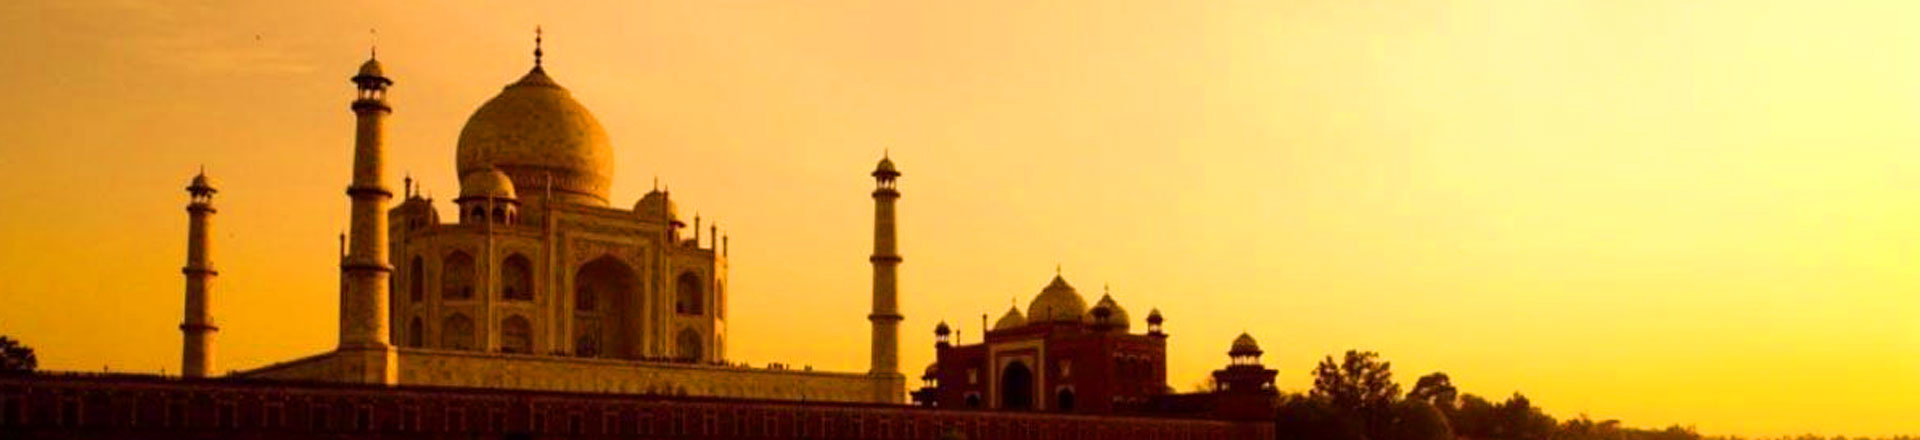 Taj Mahal Sunrise Day Tour by Car